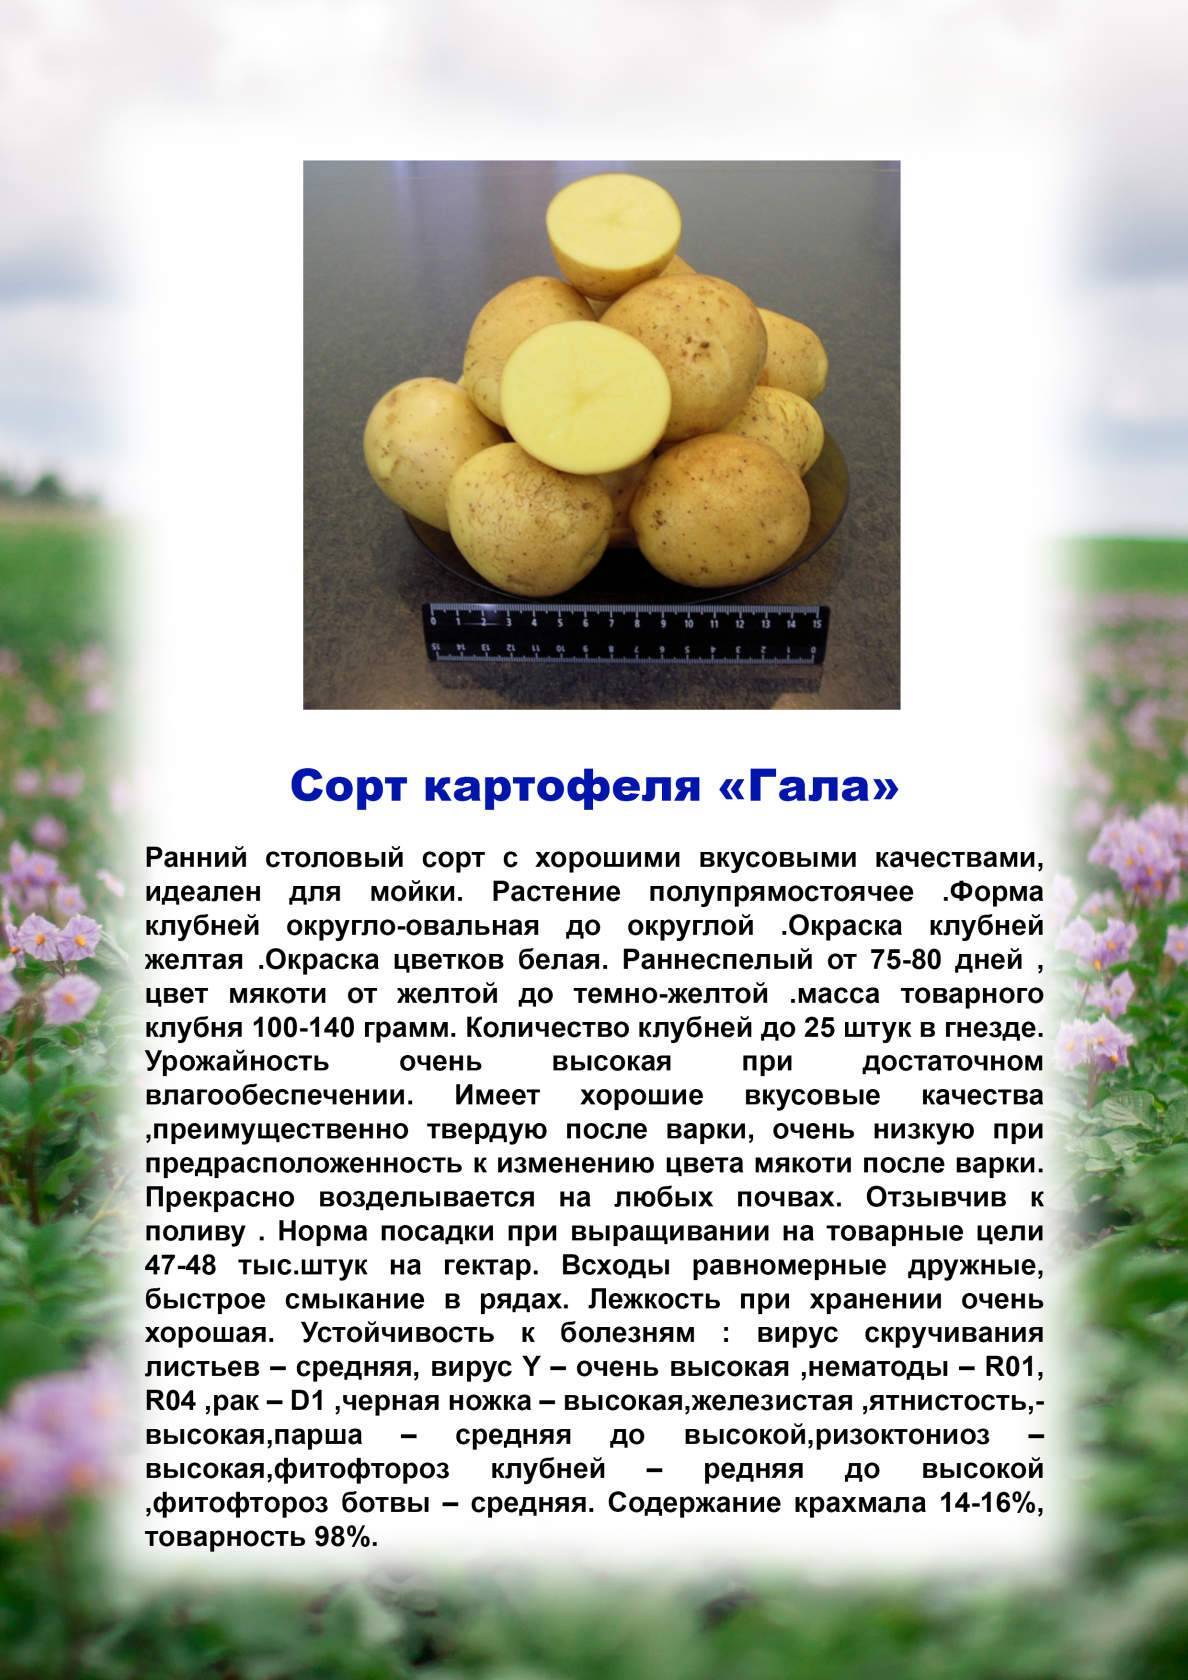 Картофель палац: описание сорта, харакетристики и фото, особенности выращивания и ухода, сбор и хранение урожая